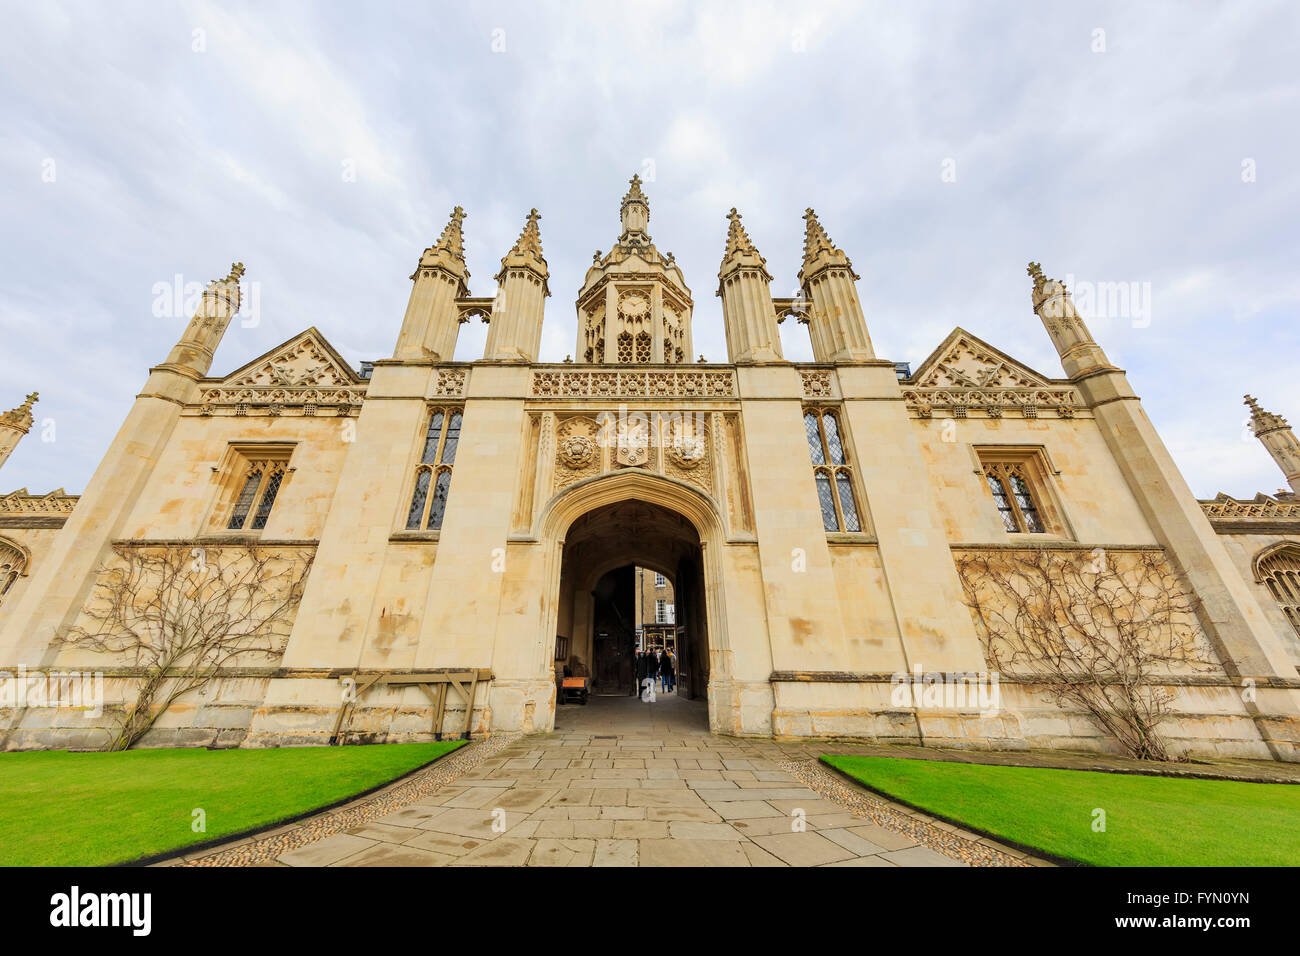 Schöne Orte rund um den berühmten King College an der University of Cambridge, Großbritannien Stockfoto